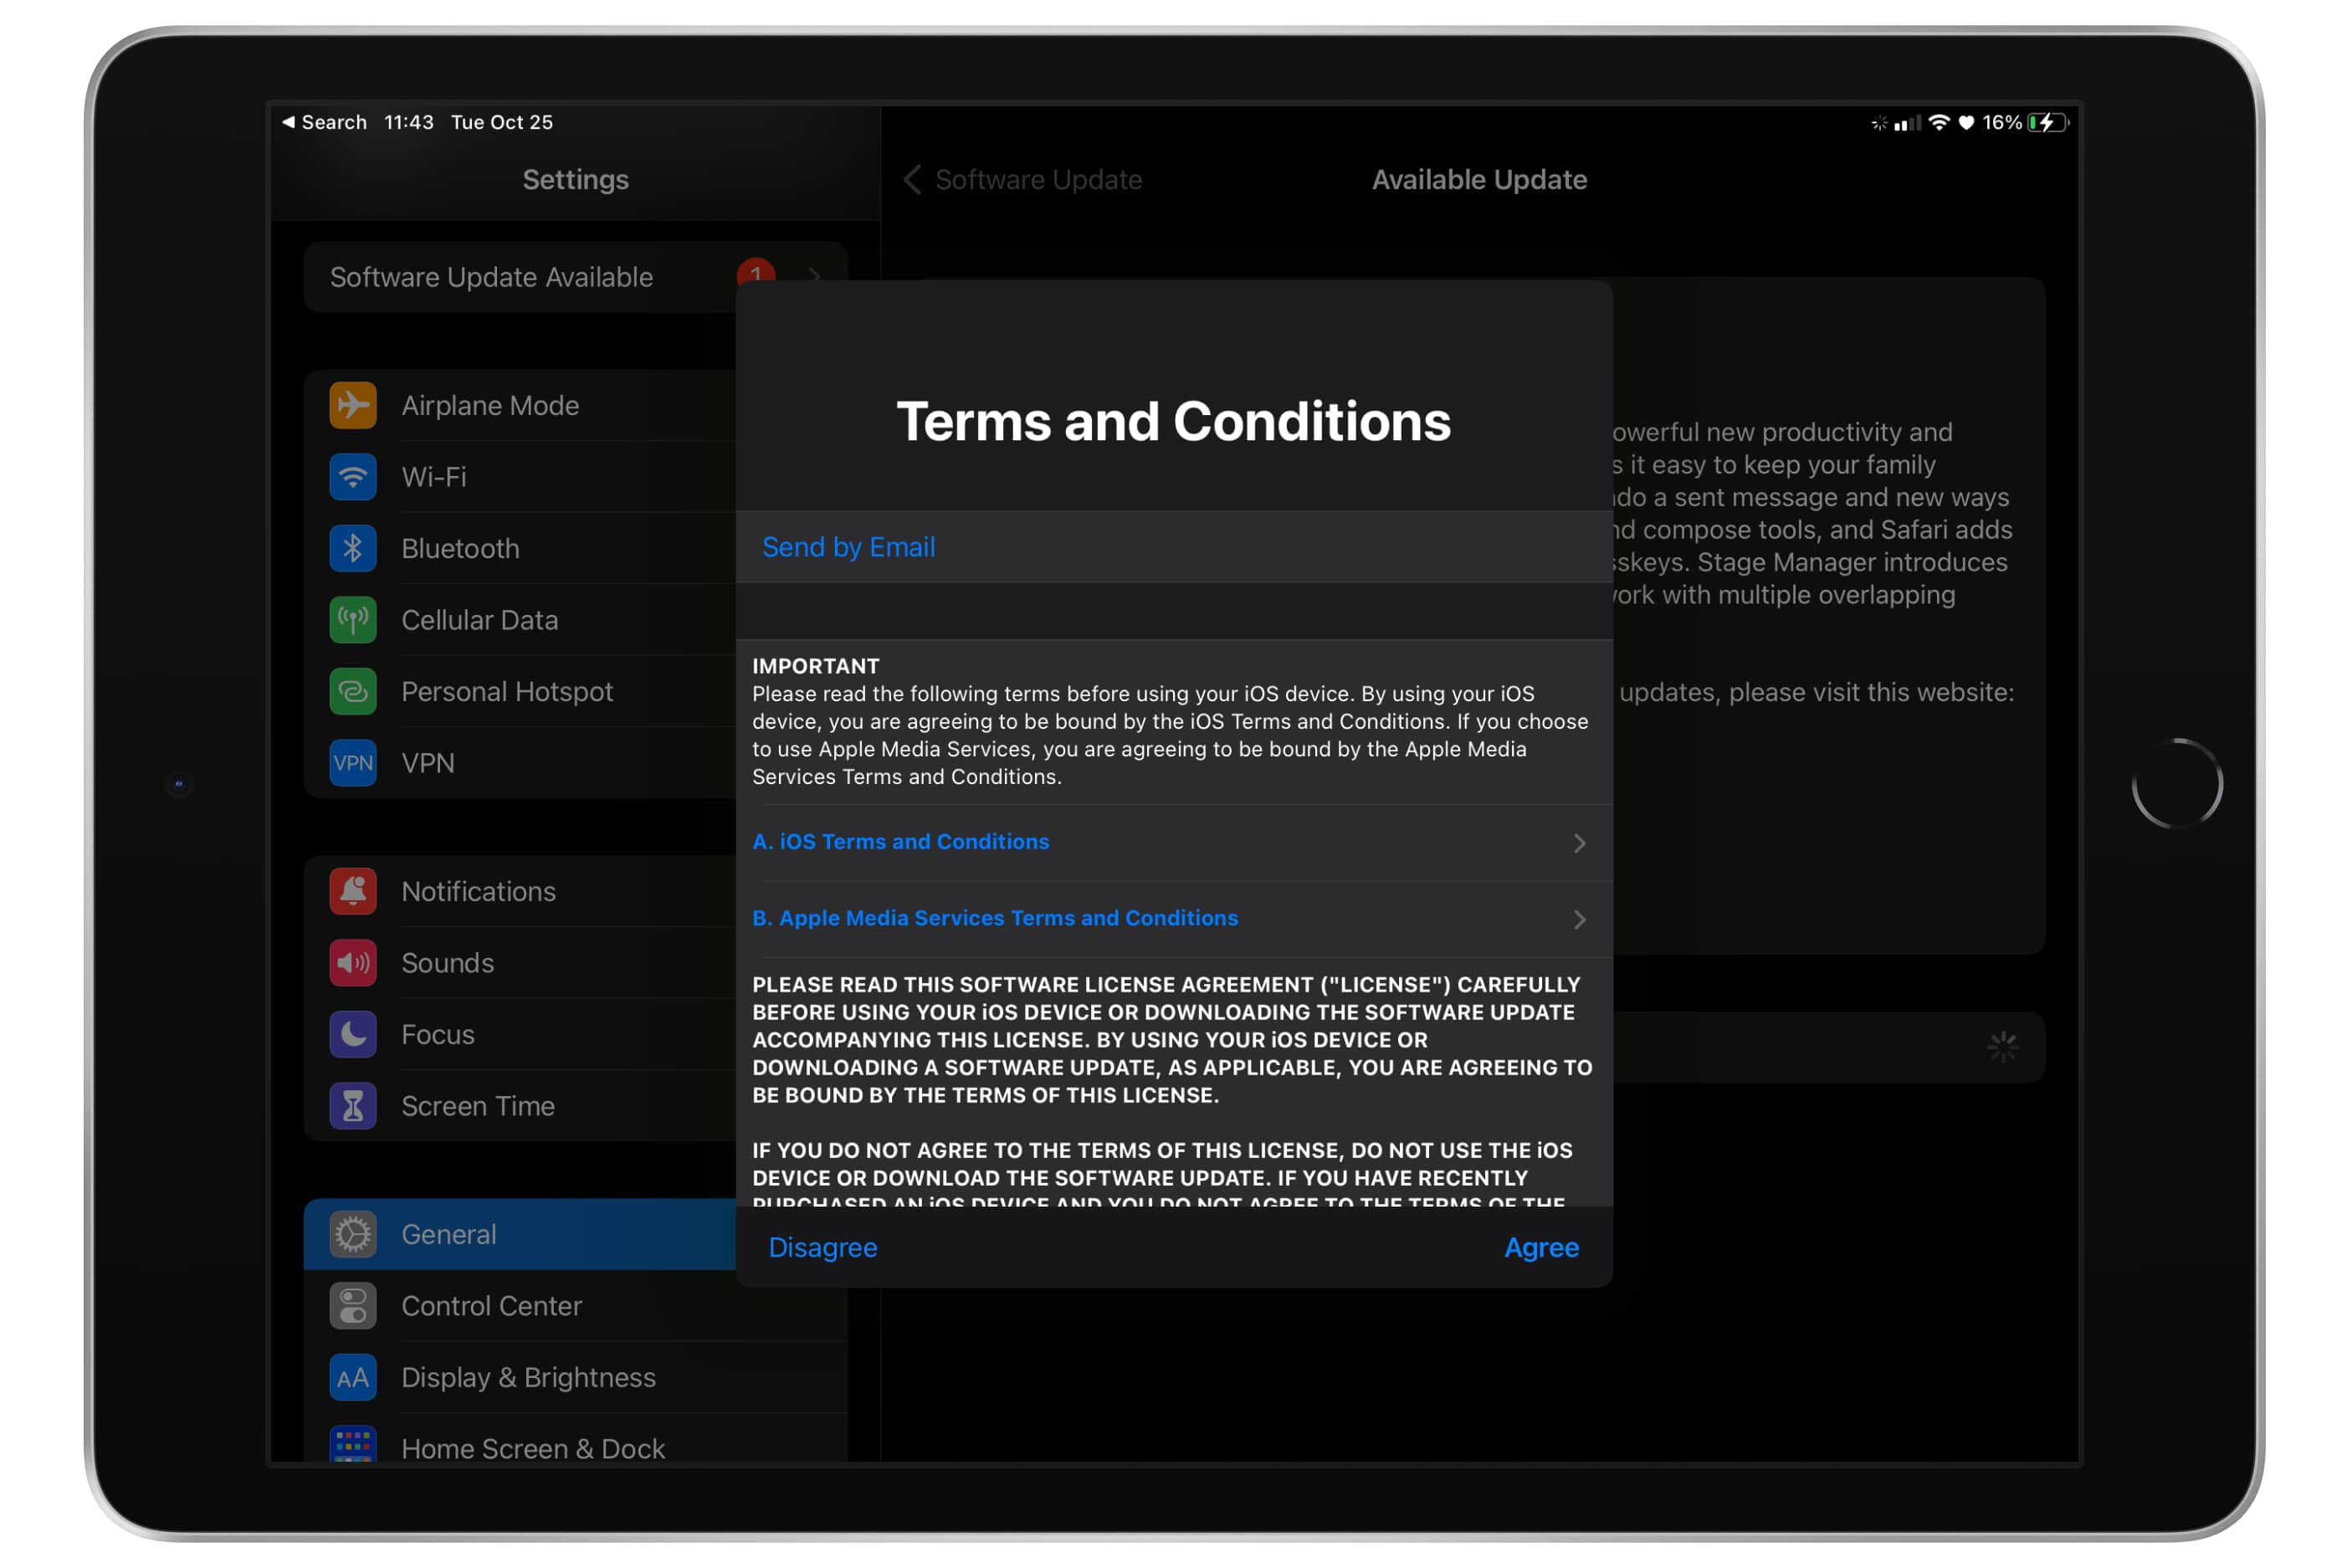 Tela de Termos e Condições de Atualização de Software do iPad.